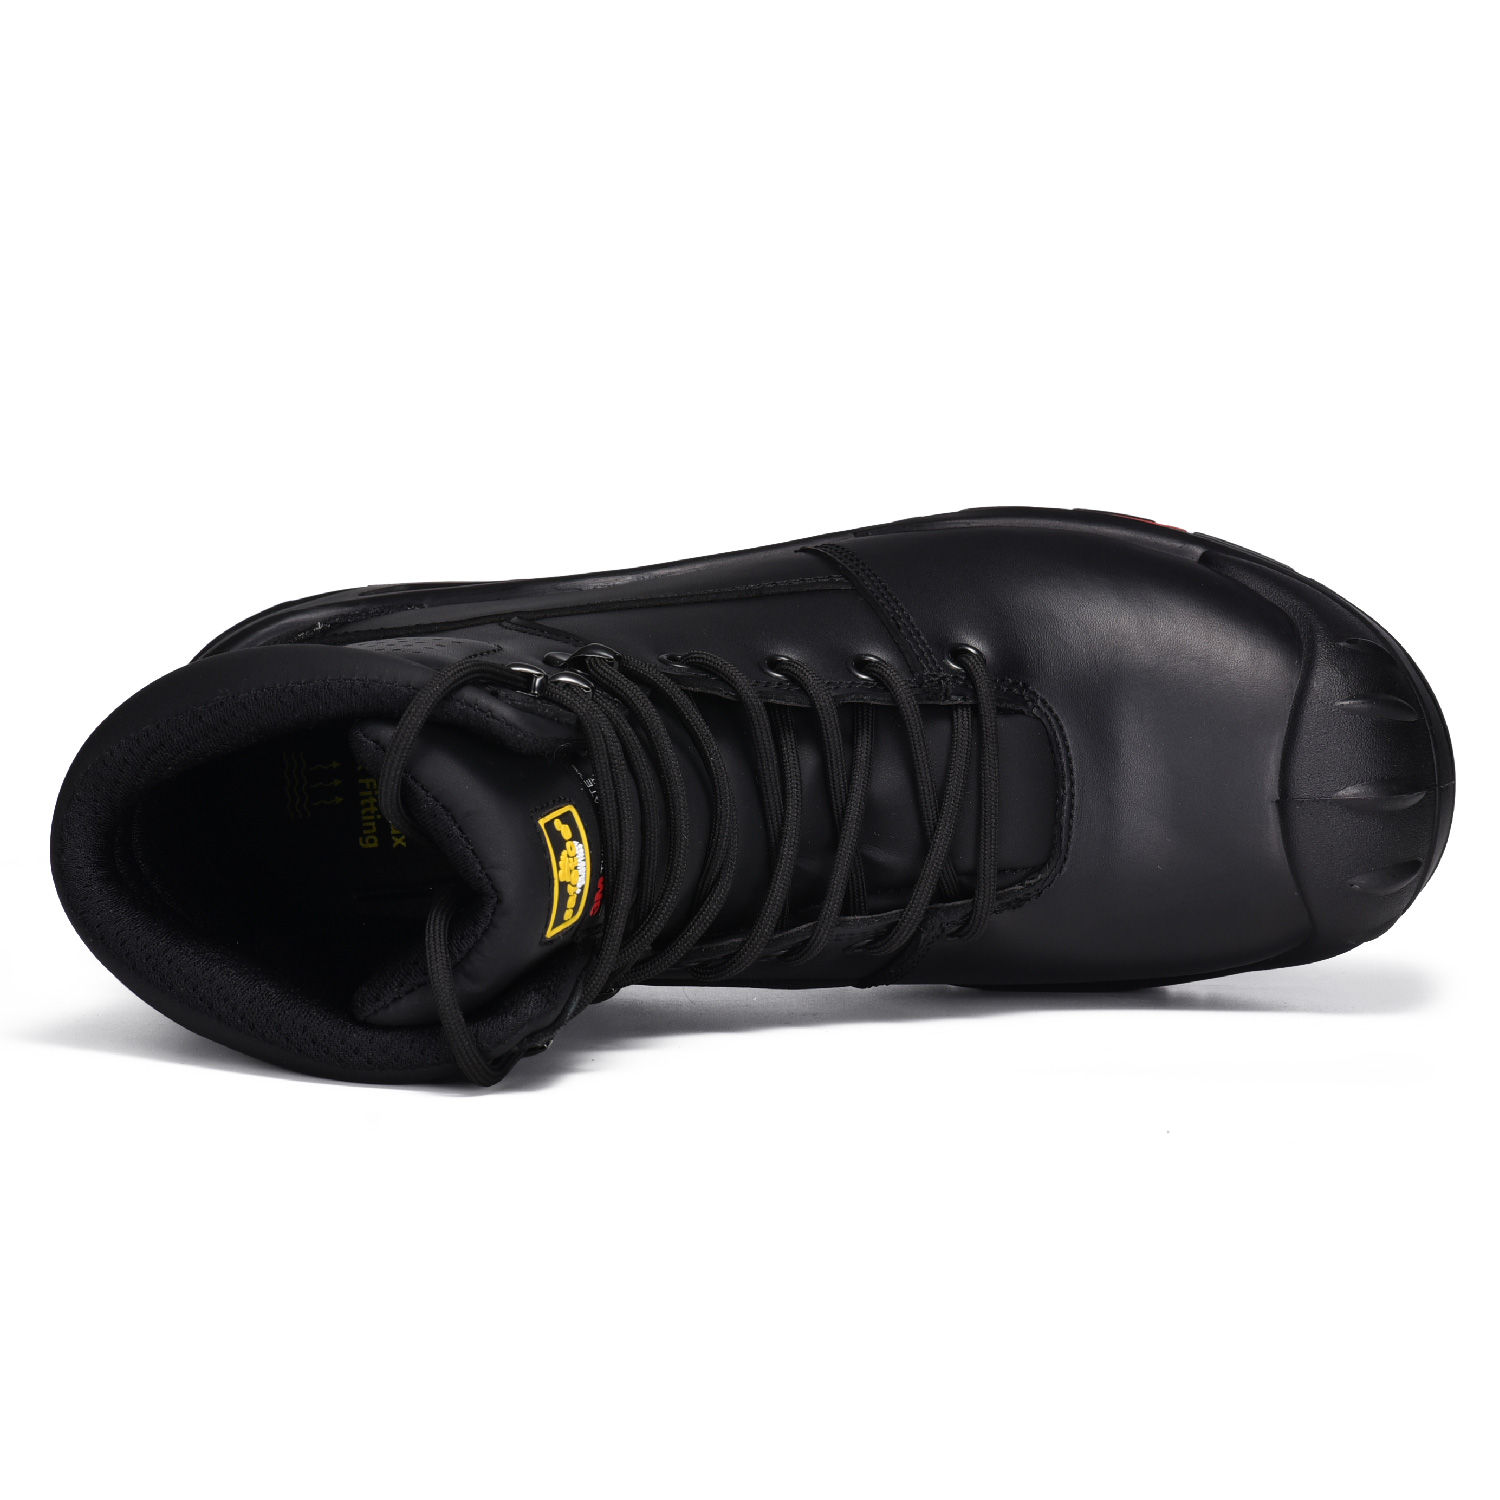 Водостойкие рабочие ботинки для тяжелых условий эксплуатации с композитным носком H-9537 Черные